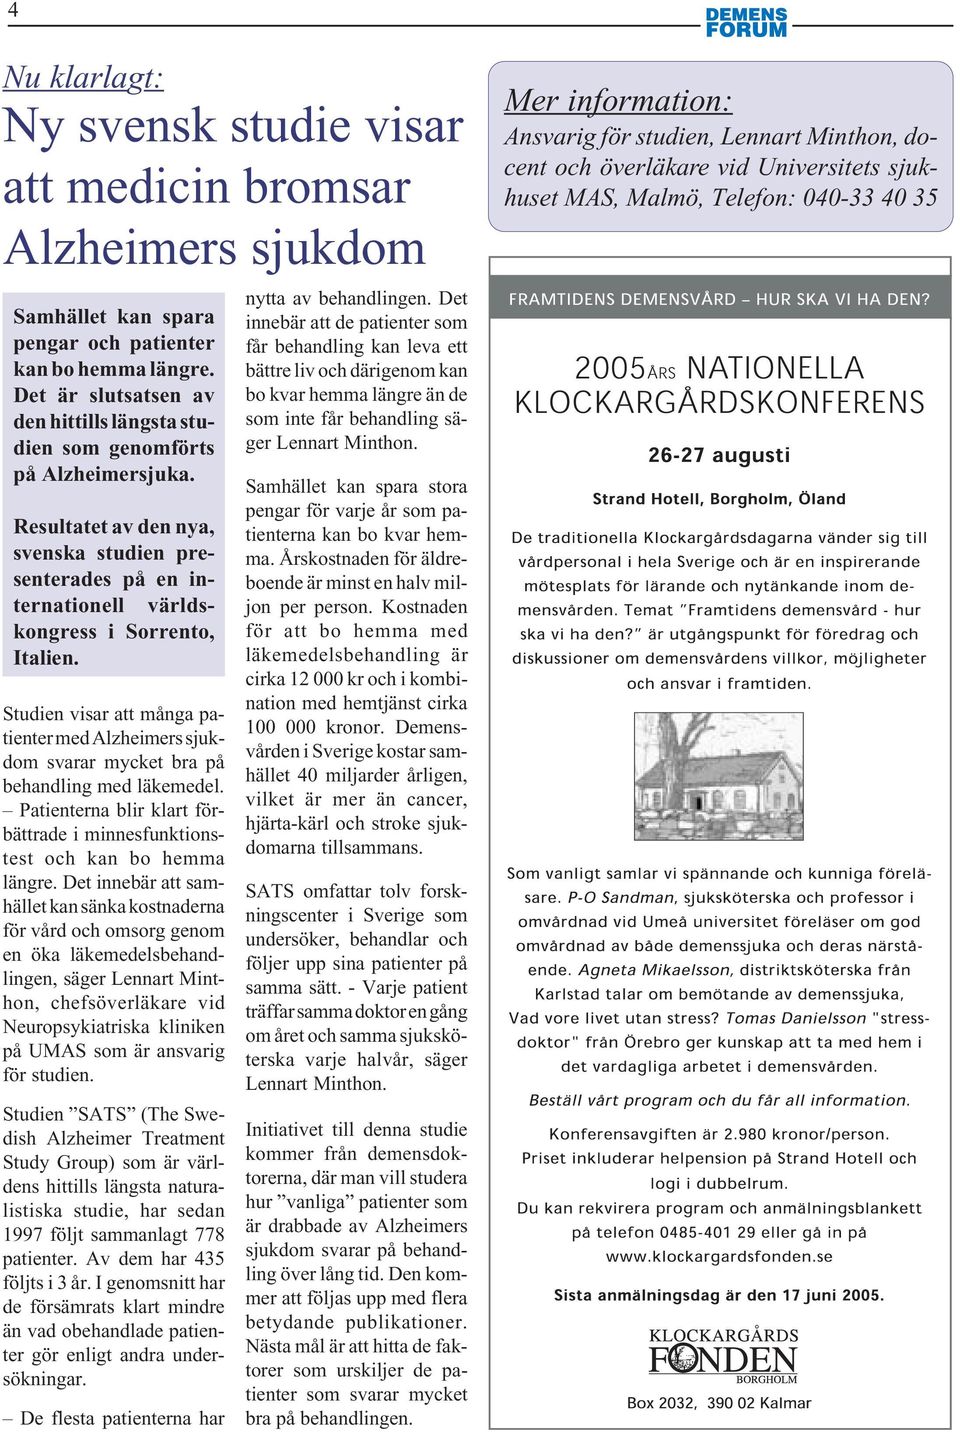 Studien visar att många patienter med Alzheimers sjukdom svarar mycket bra på behandling med läkemedel. Patienterna blir klart förbättrade i minnesfunktionstest och kan bo hemma längre.